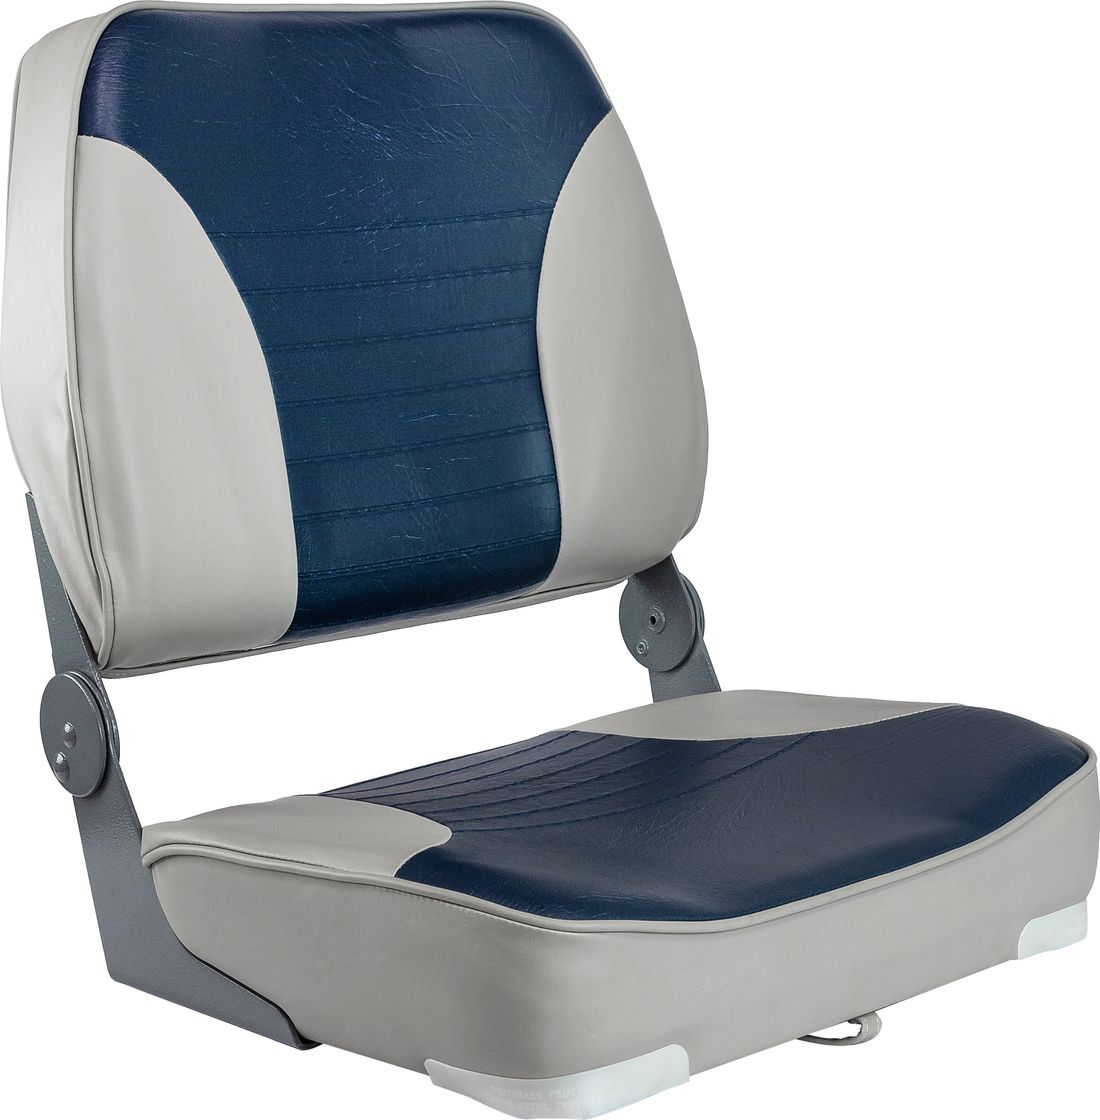 Кресло XXL складное мягкое двухцветное серый/синий 1040691 кресло мягкое deluxe sport с откидным валиком белый синий 1043251